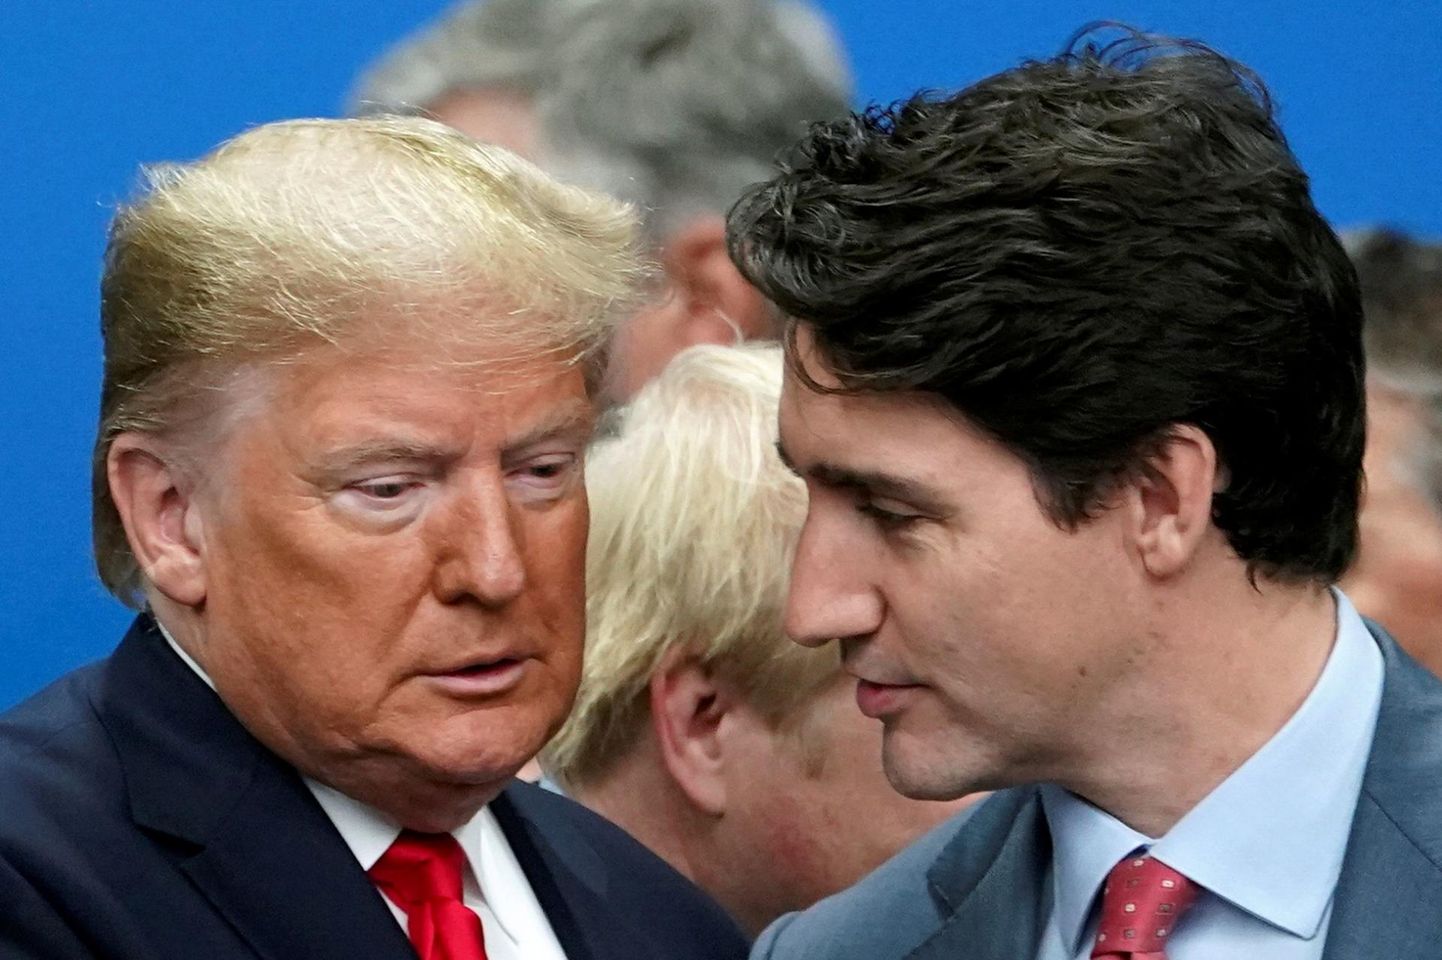 Kanada peaminister Justin Trudeau ja USA president Donald Trump on rahvusvahelistel kohtumistel korduvalt vastastikku süüdistusi esitanud. Näiteks mullusel NATO liidrite kohtumisel Londonis pakkus palju kõneainet video, kus Trudeau naljatles Trumpi jutukuse üle, mispeale süüdistas Trump teda kahepalgelisuses. 